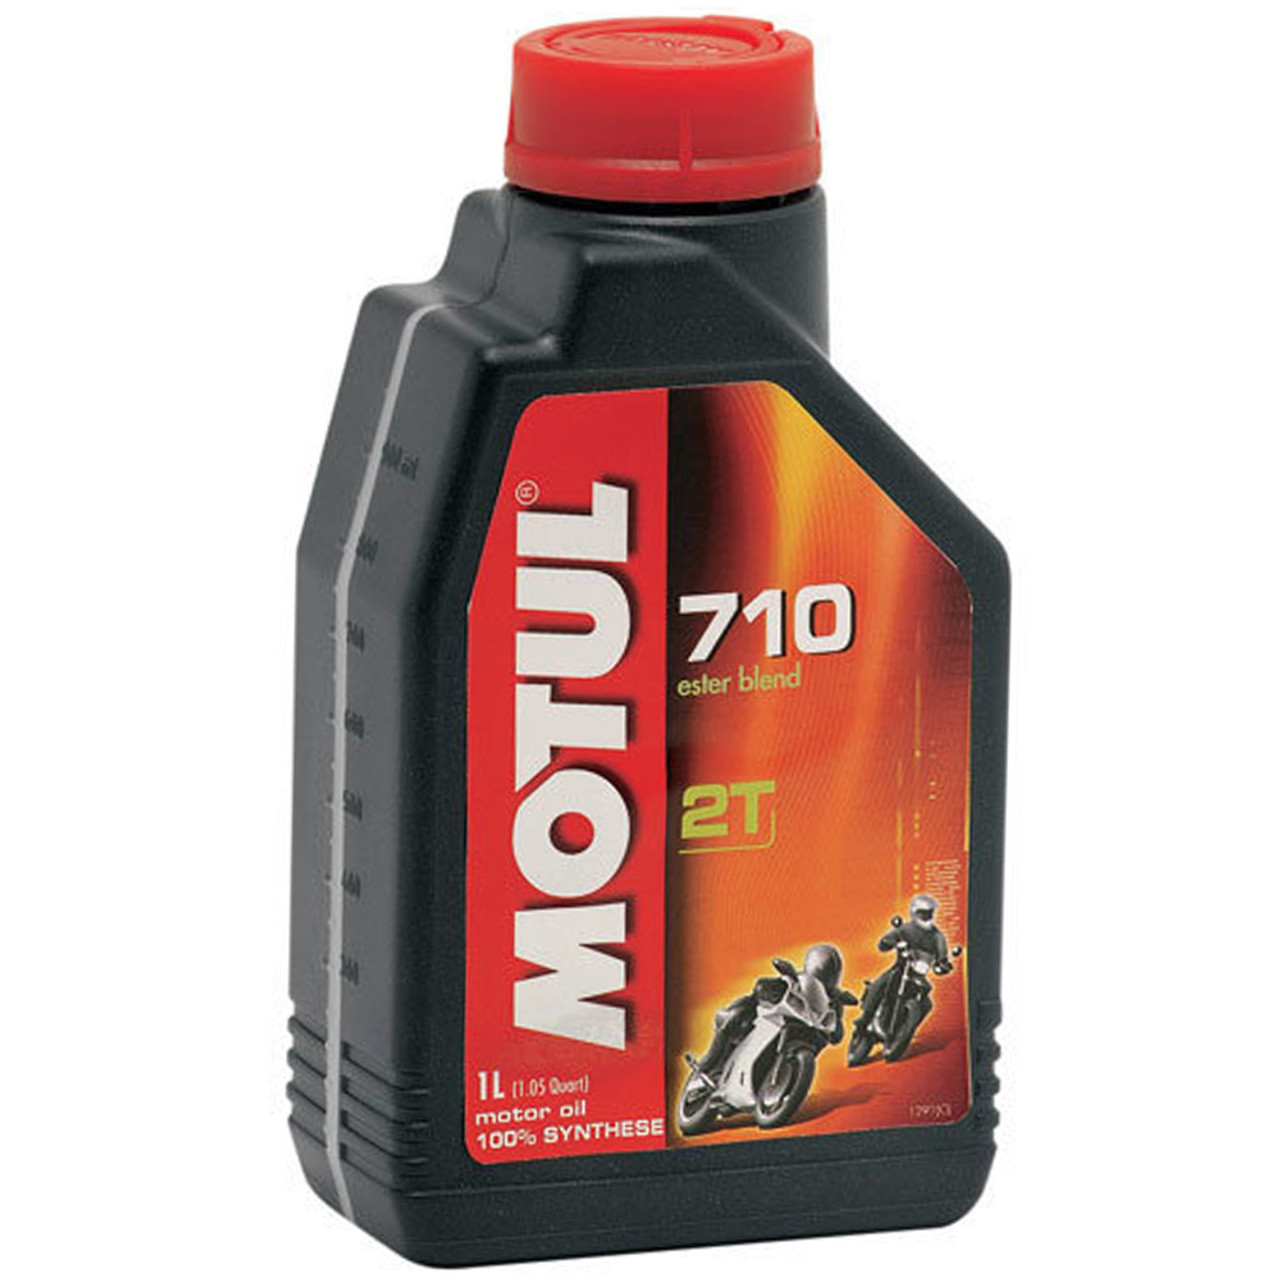 Motul 710 2T 2-stroke Oil – Sierra Motorcycle Supply